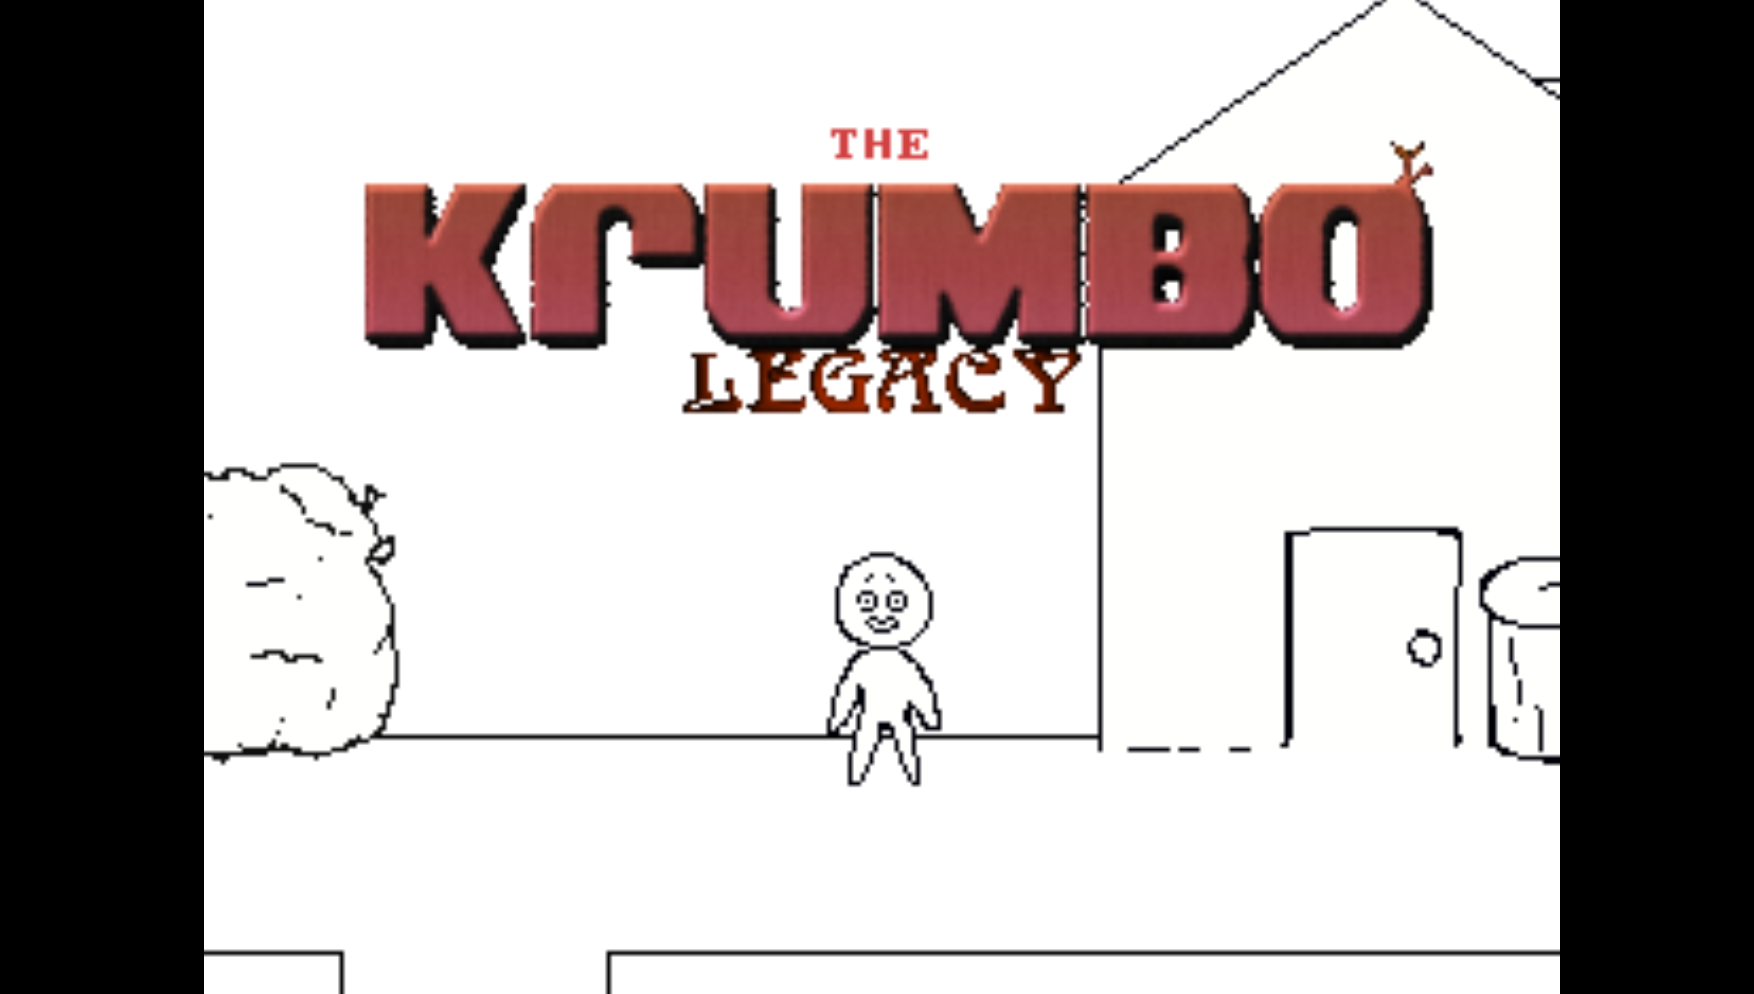 The Krumbo Legacy